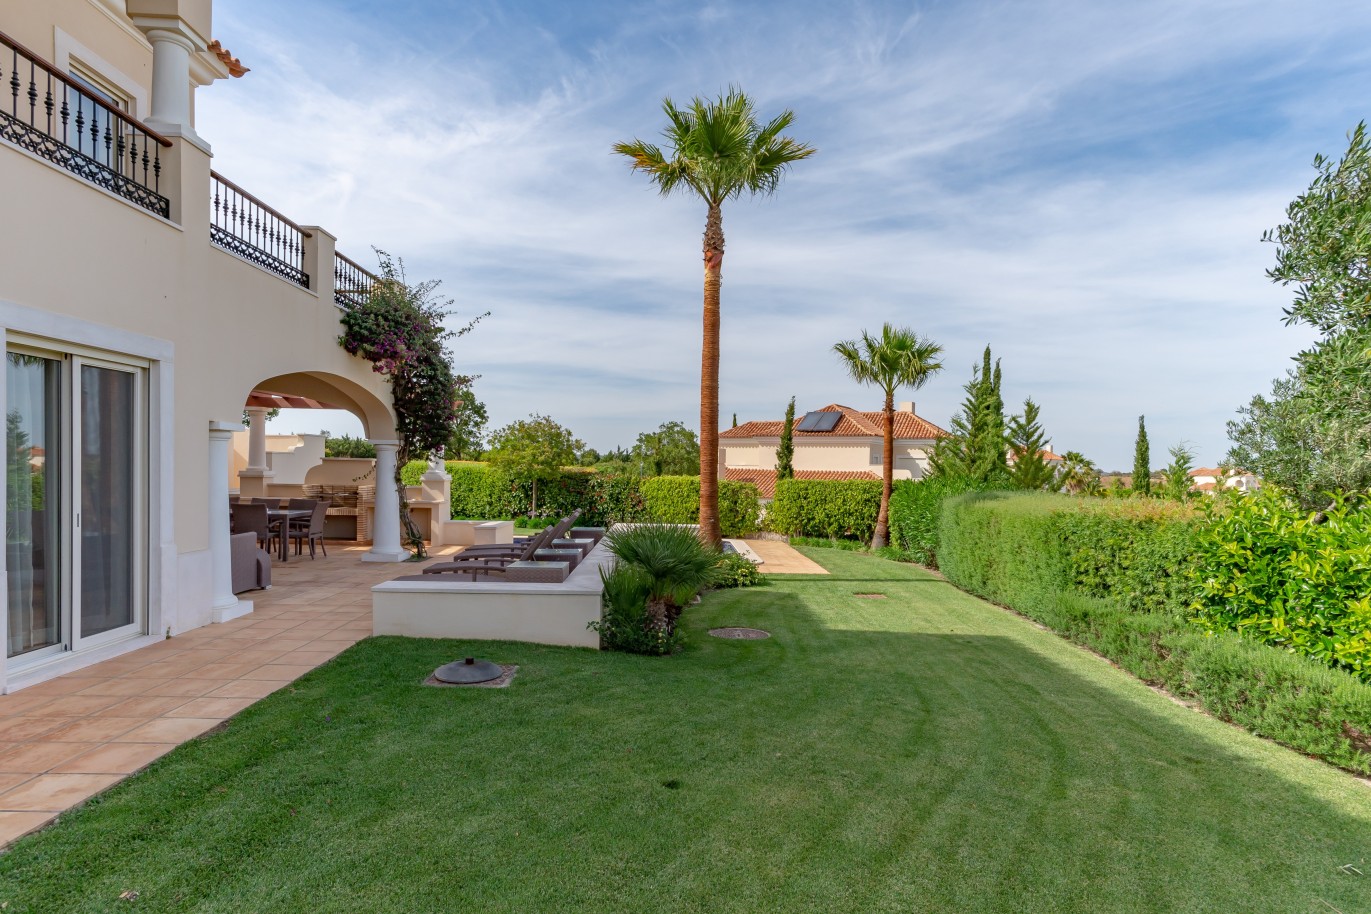 4 Bedroom Villa with pool for sale in Vila Real de Santo Antonio, Algarve_215701